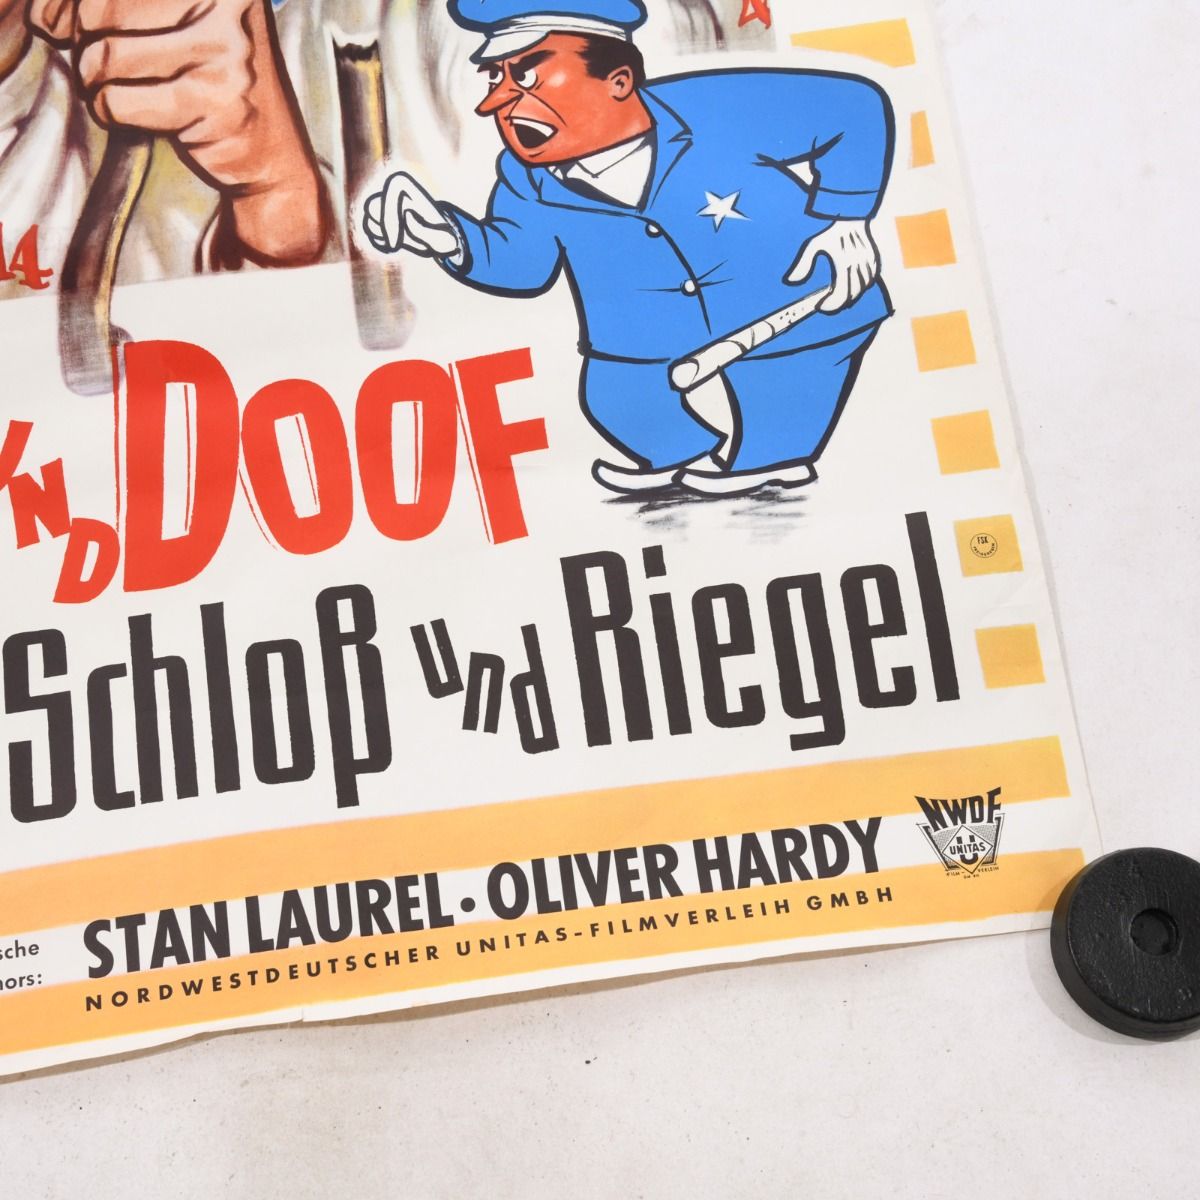 Laurel & Hardy Original 1960s German Movie Poster (Dick und Doof Hinter Schloss und Riegel)